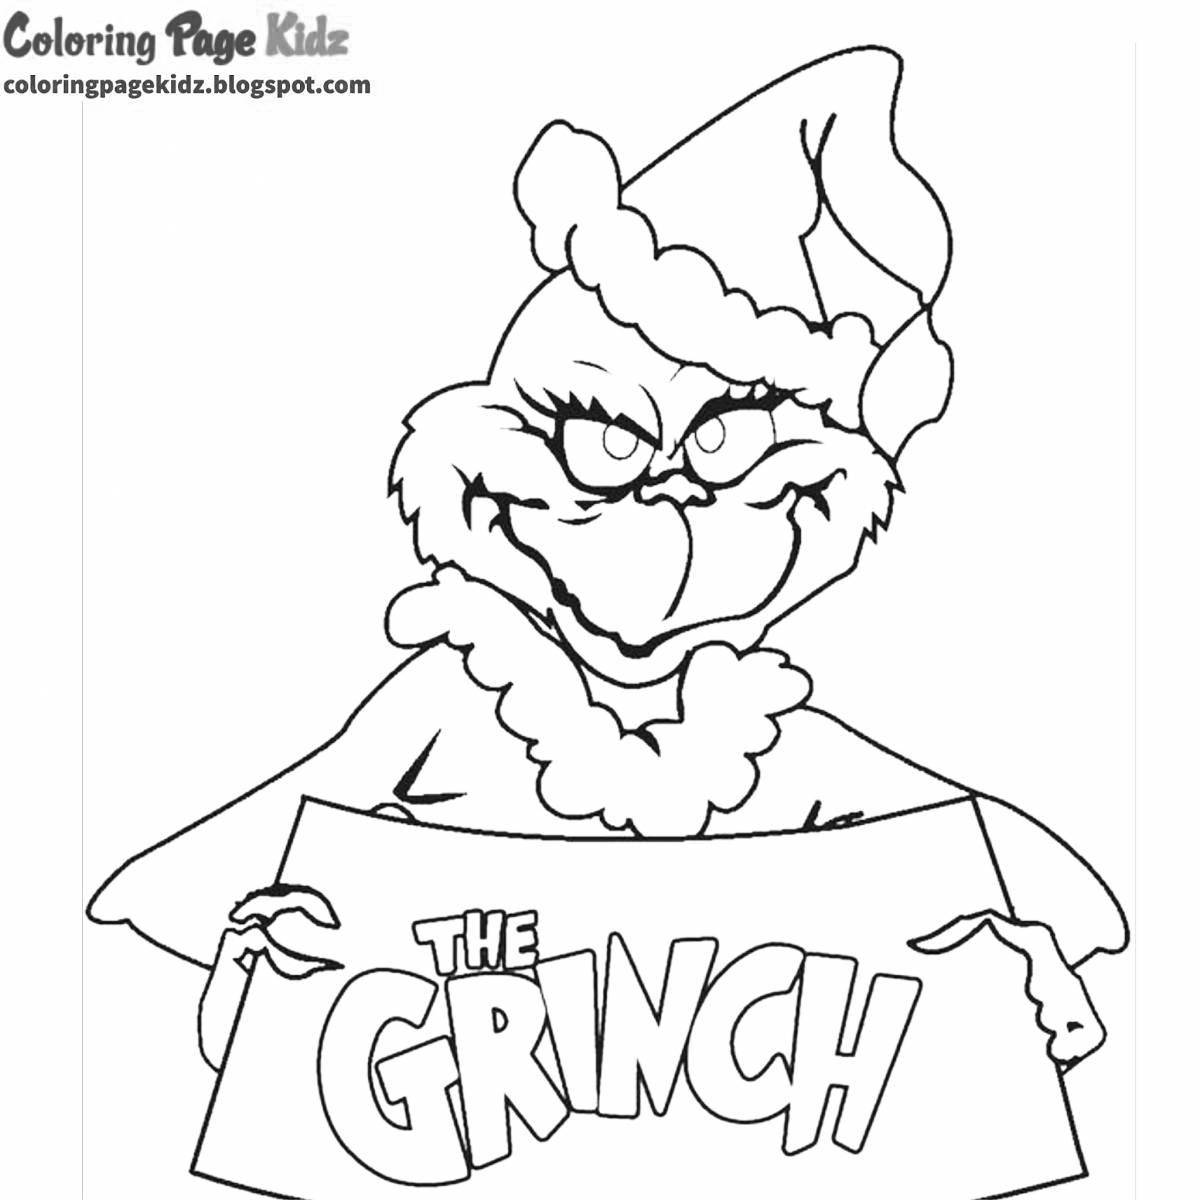 Grinch grumpy coloring